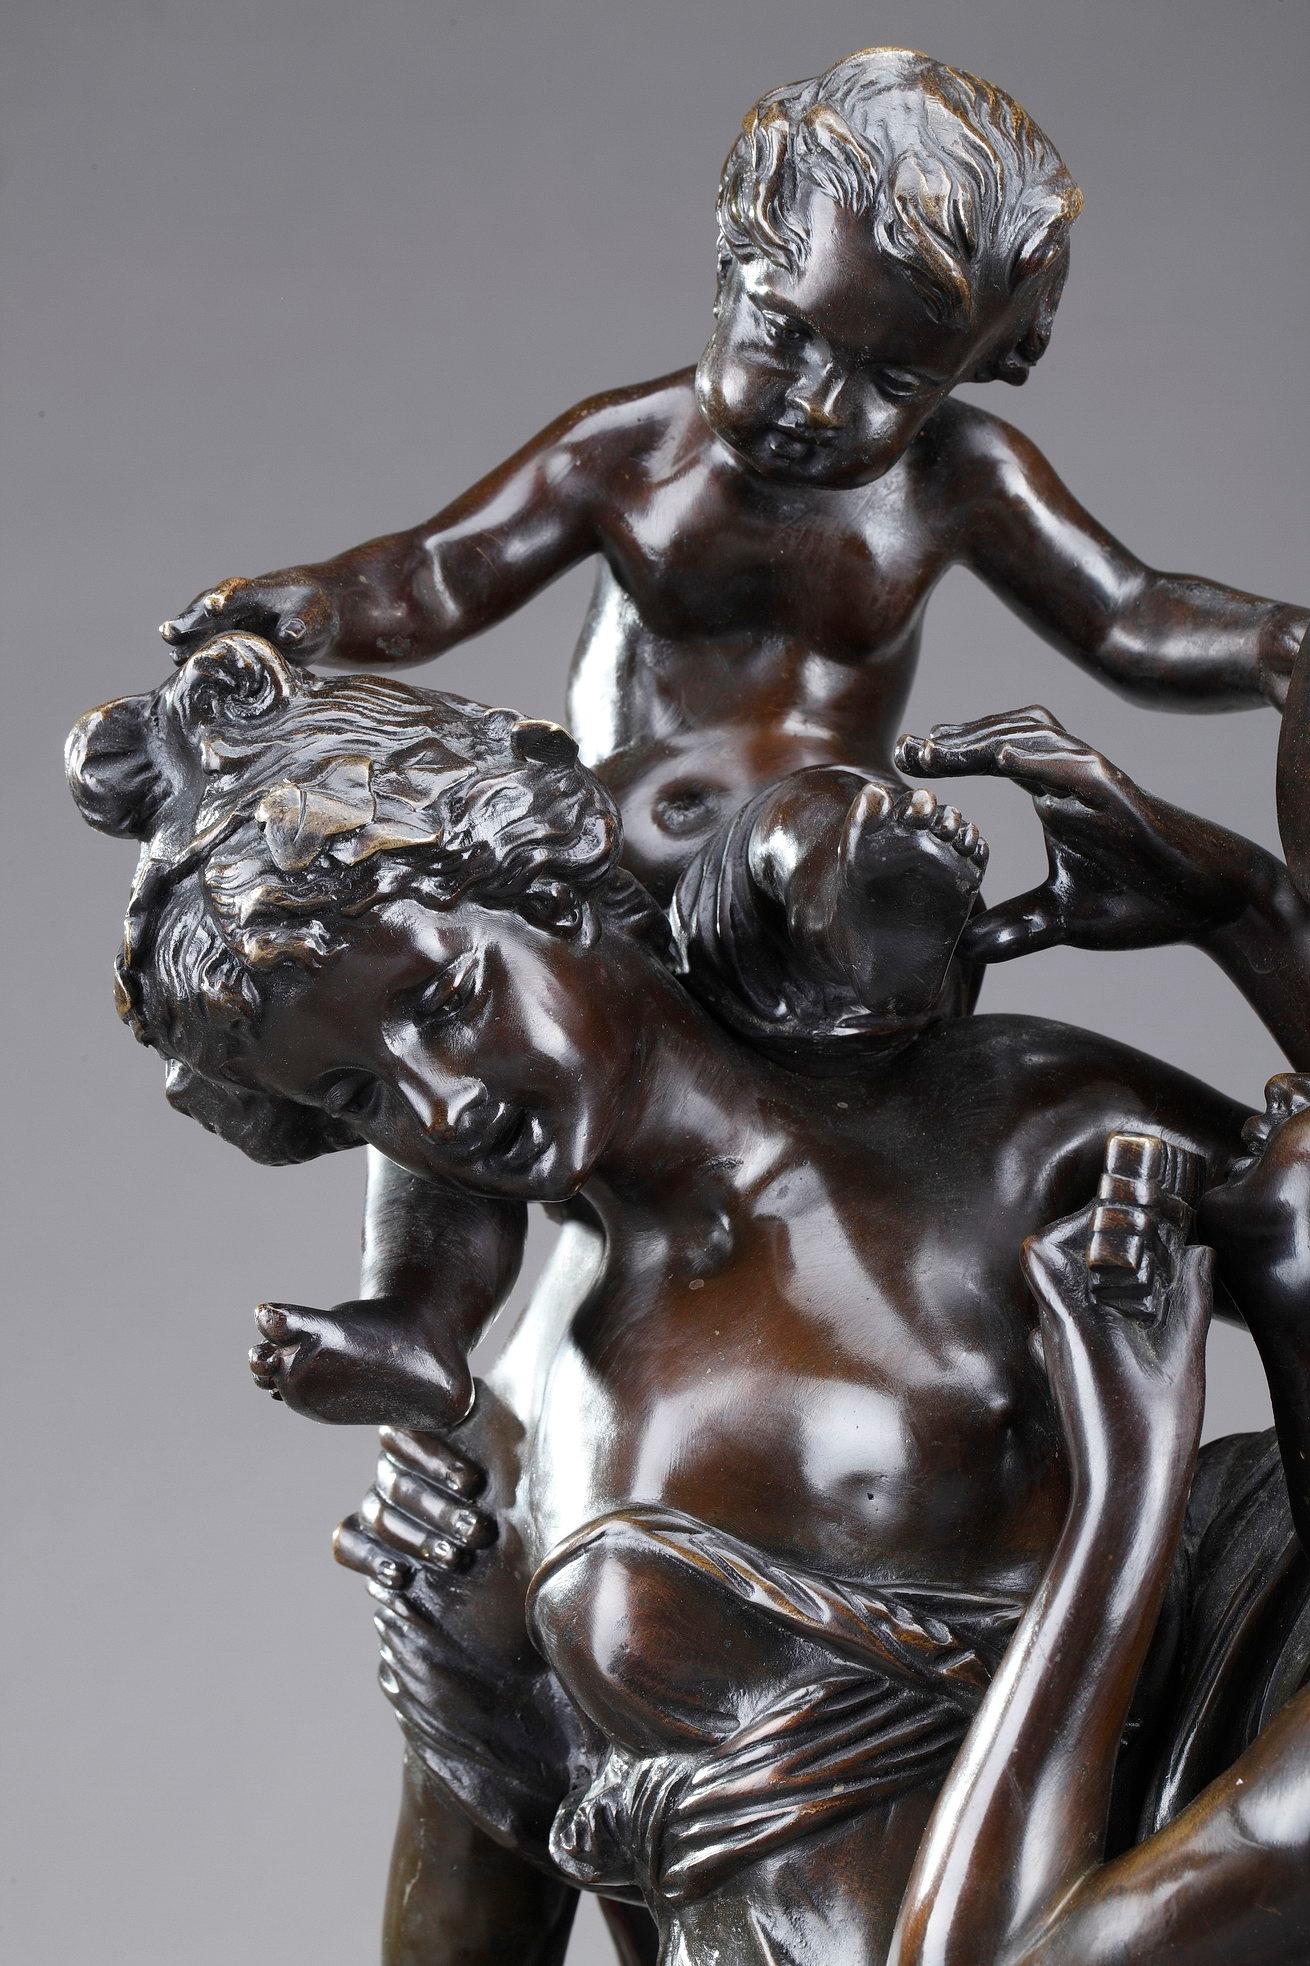 Große Bronzegruppe mit brauner Patina nach Claude Michel, genannt Clodion (Franzose, 1738-1814). Die Statuette zeigt zwei junge Bacchantinnen und drei Putten. Die Bacchantinnen sind mit Weinblättern gekrönt und tragen wallende Kleider im antiken